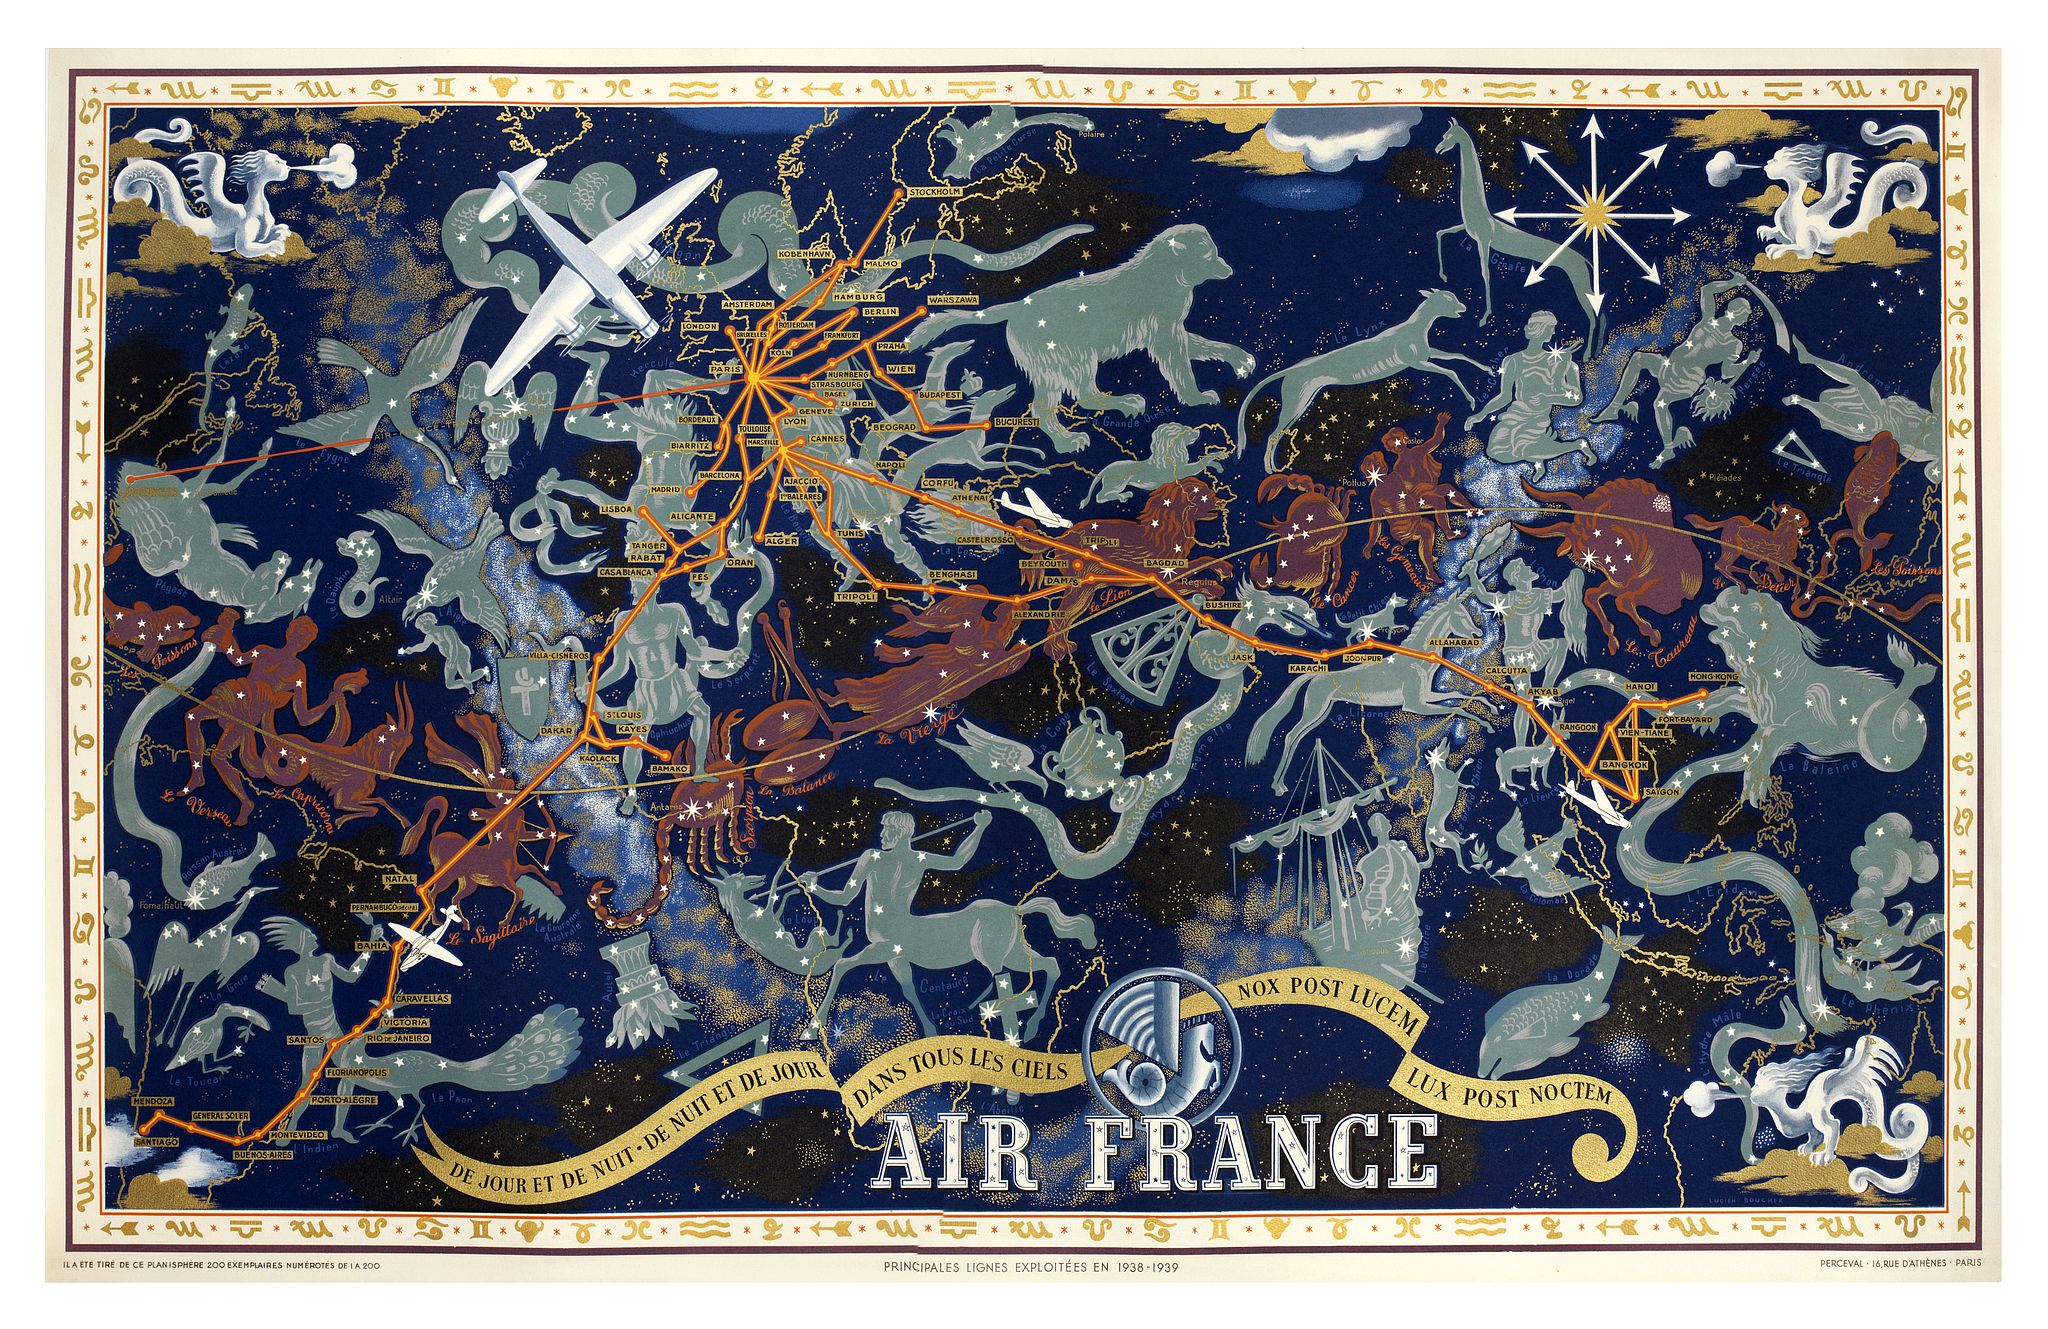 Air France De jour et de nuit - De nuit et de jour, dans les ciels, nox post Lucem lux post noctem, principales lignes exploites en 1938-1939